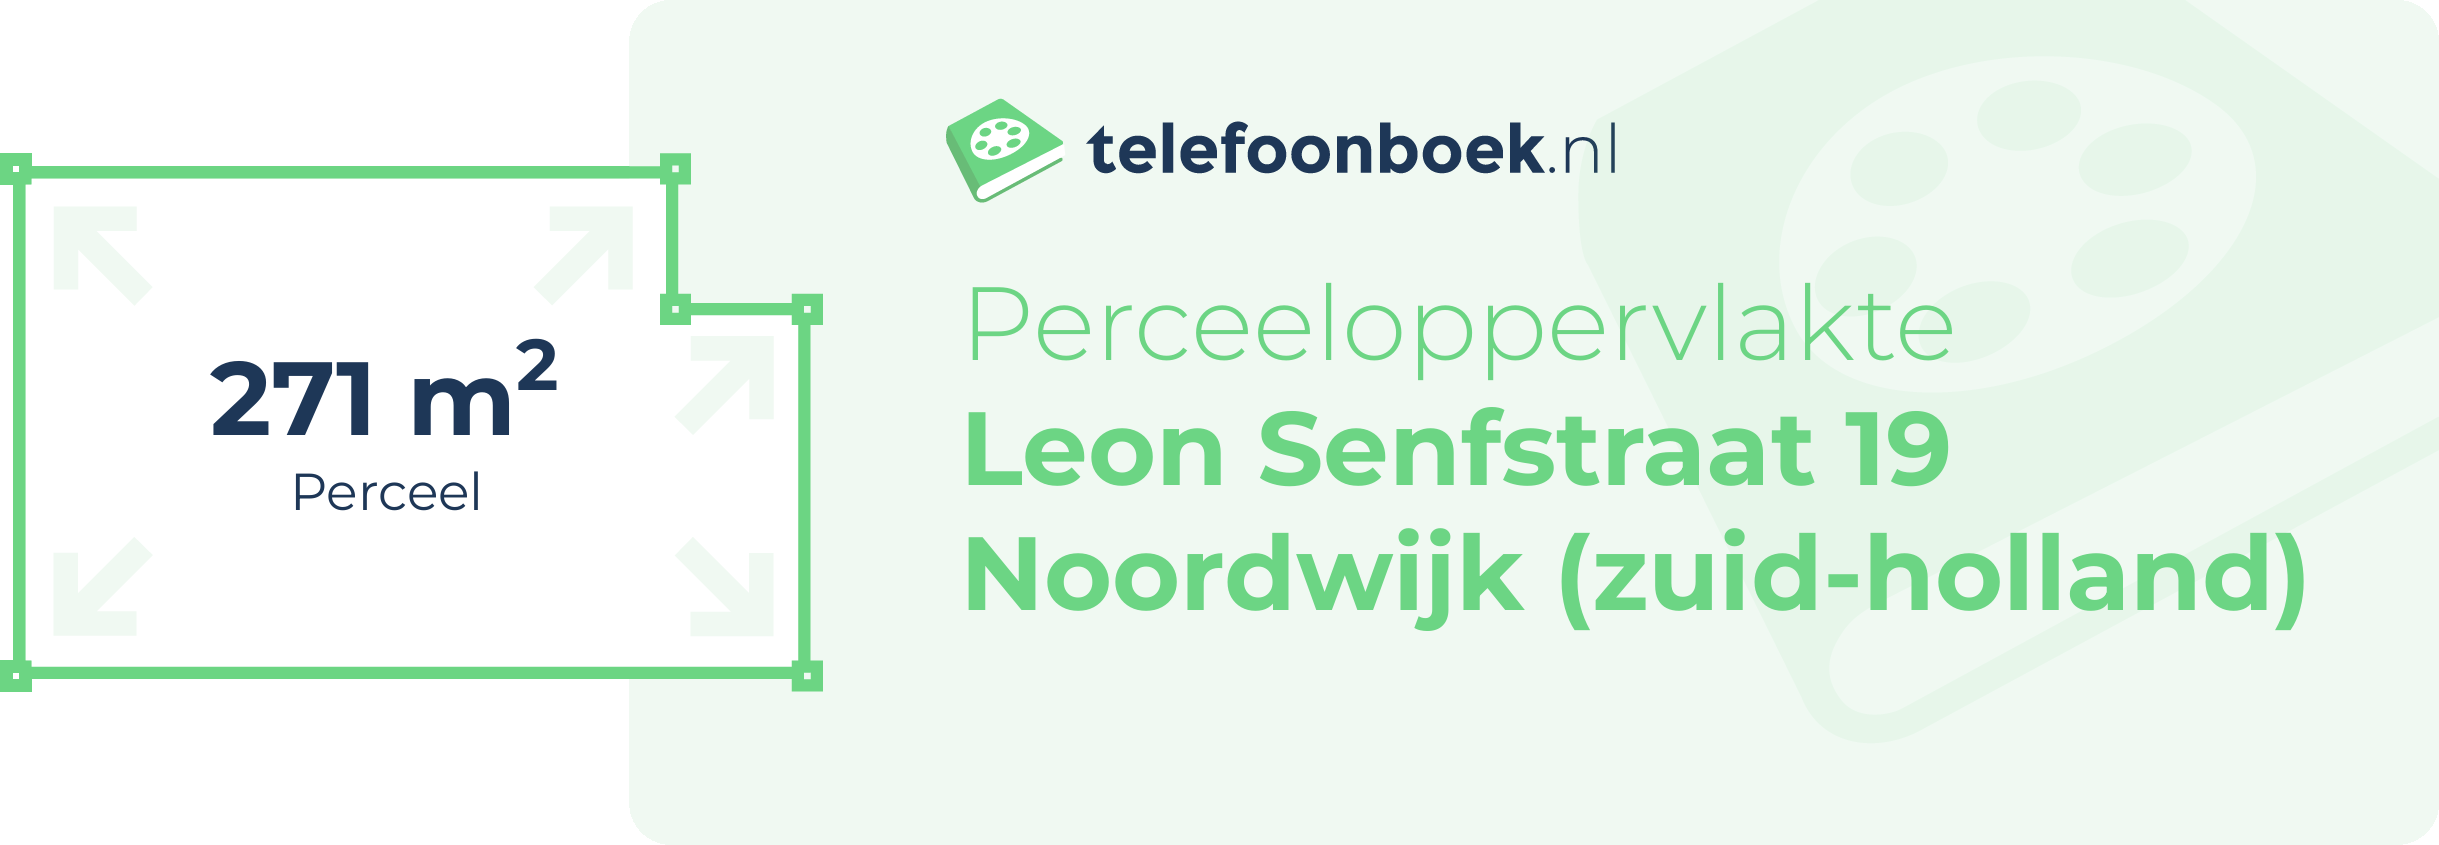 Perceeloppervlakte Leon Senfstraat 19 Noordwijk (Zuid-Holland)